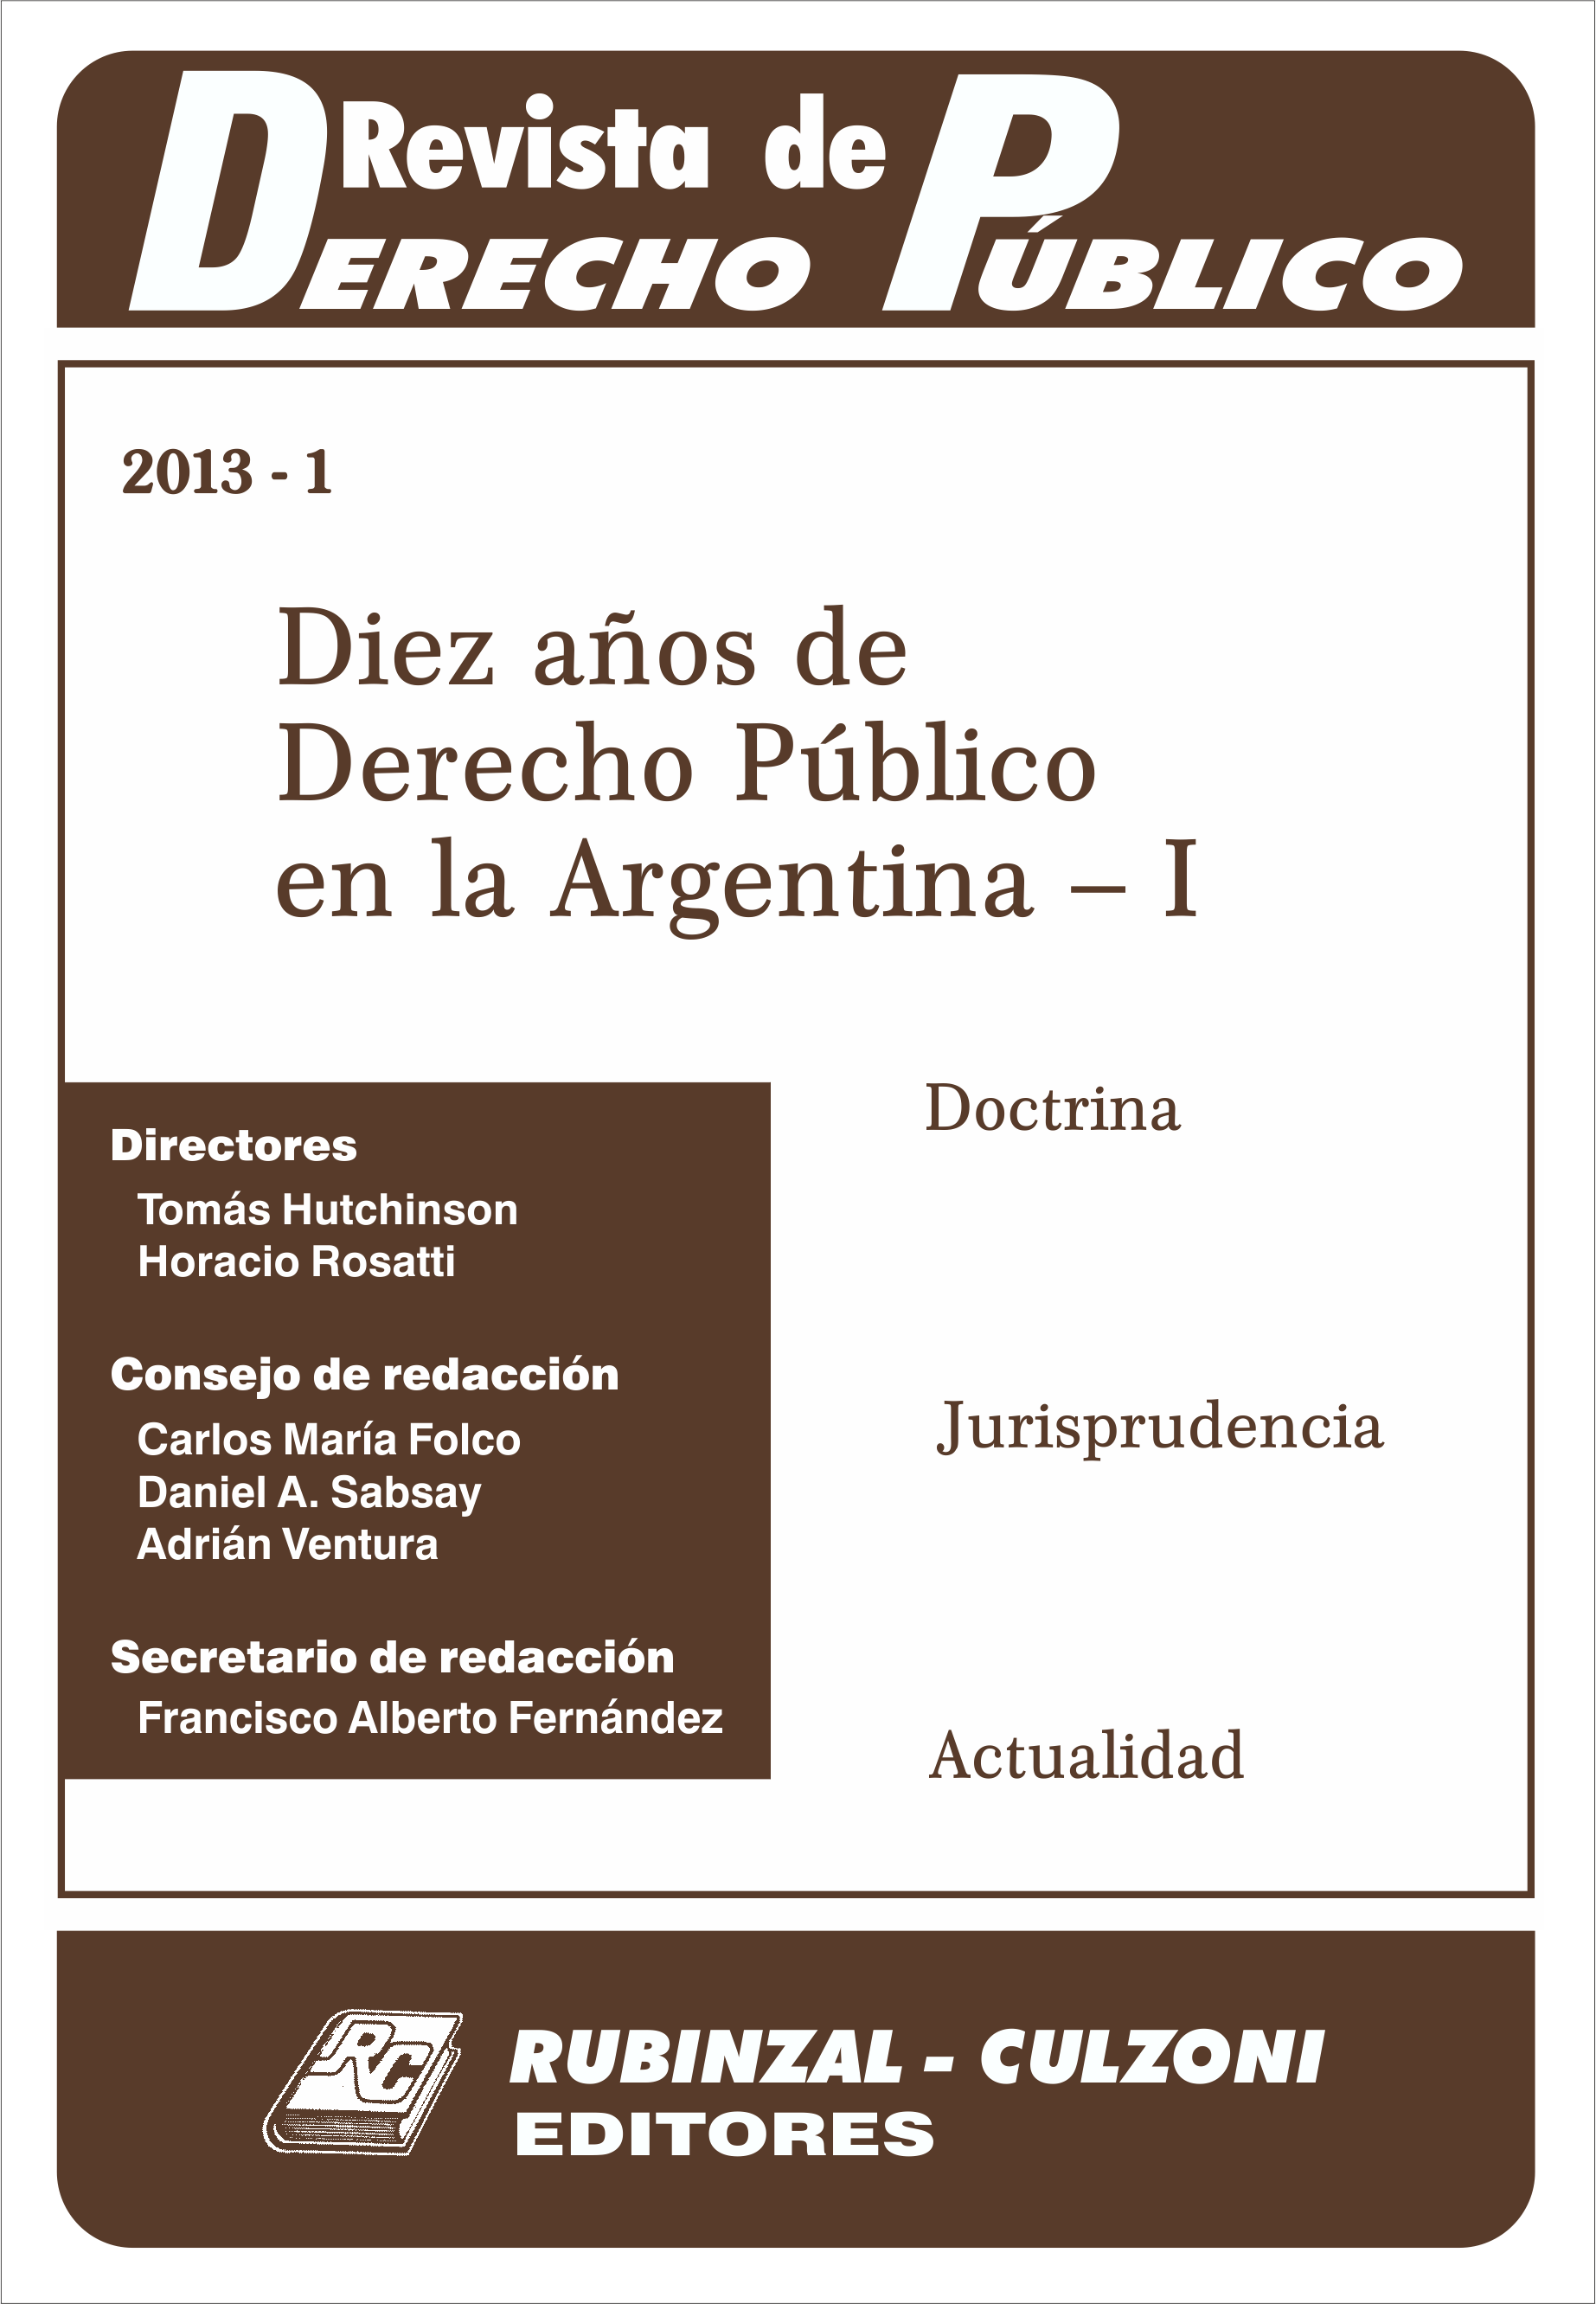 Revista de Derecho Público - Diez años de Derecho Público en la Argentina - I.